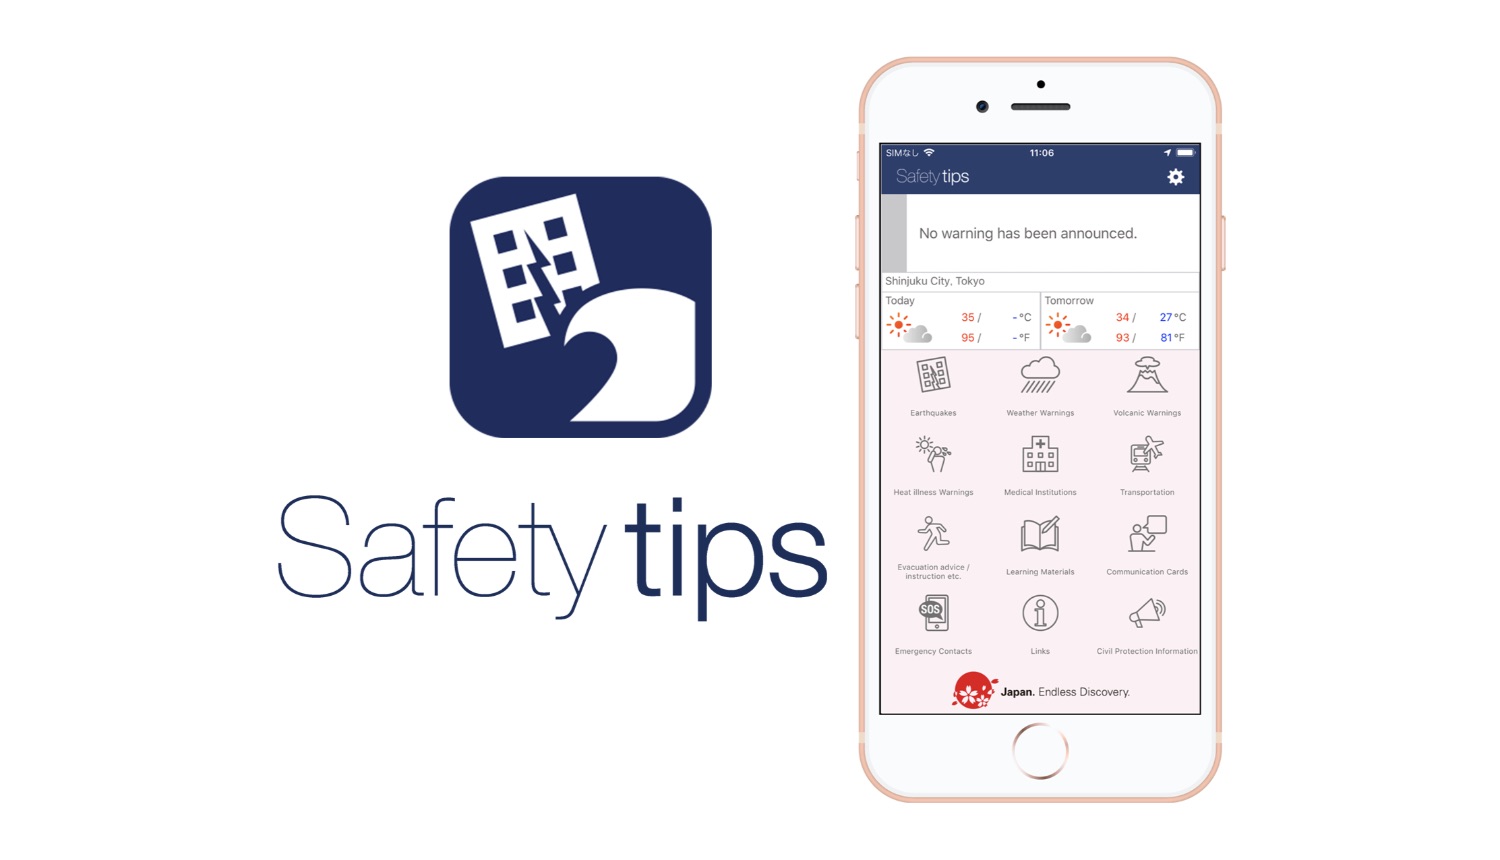 日本の災害を外国語でチェックできるアプリ「Safety tips」Disaster Safety App 災難安全應用